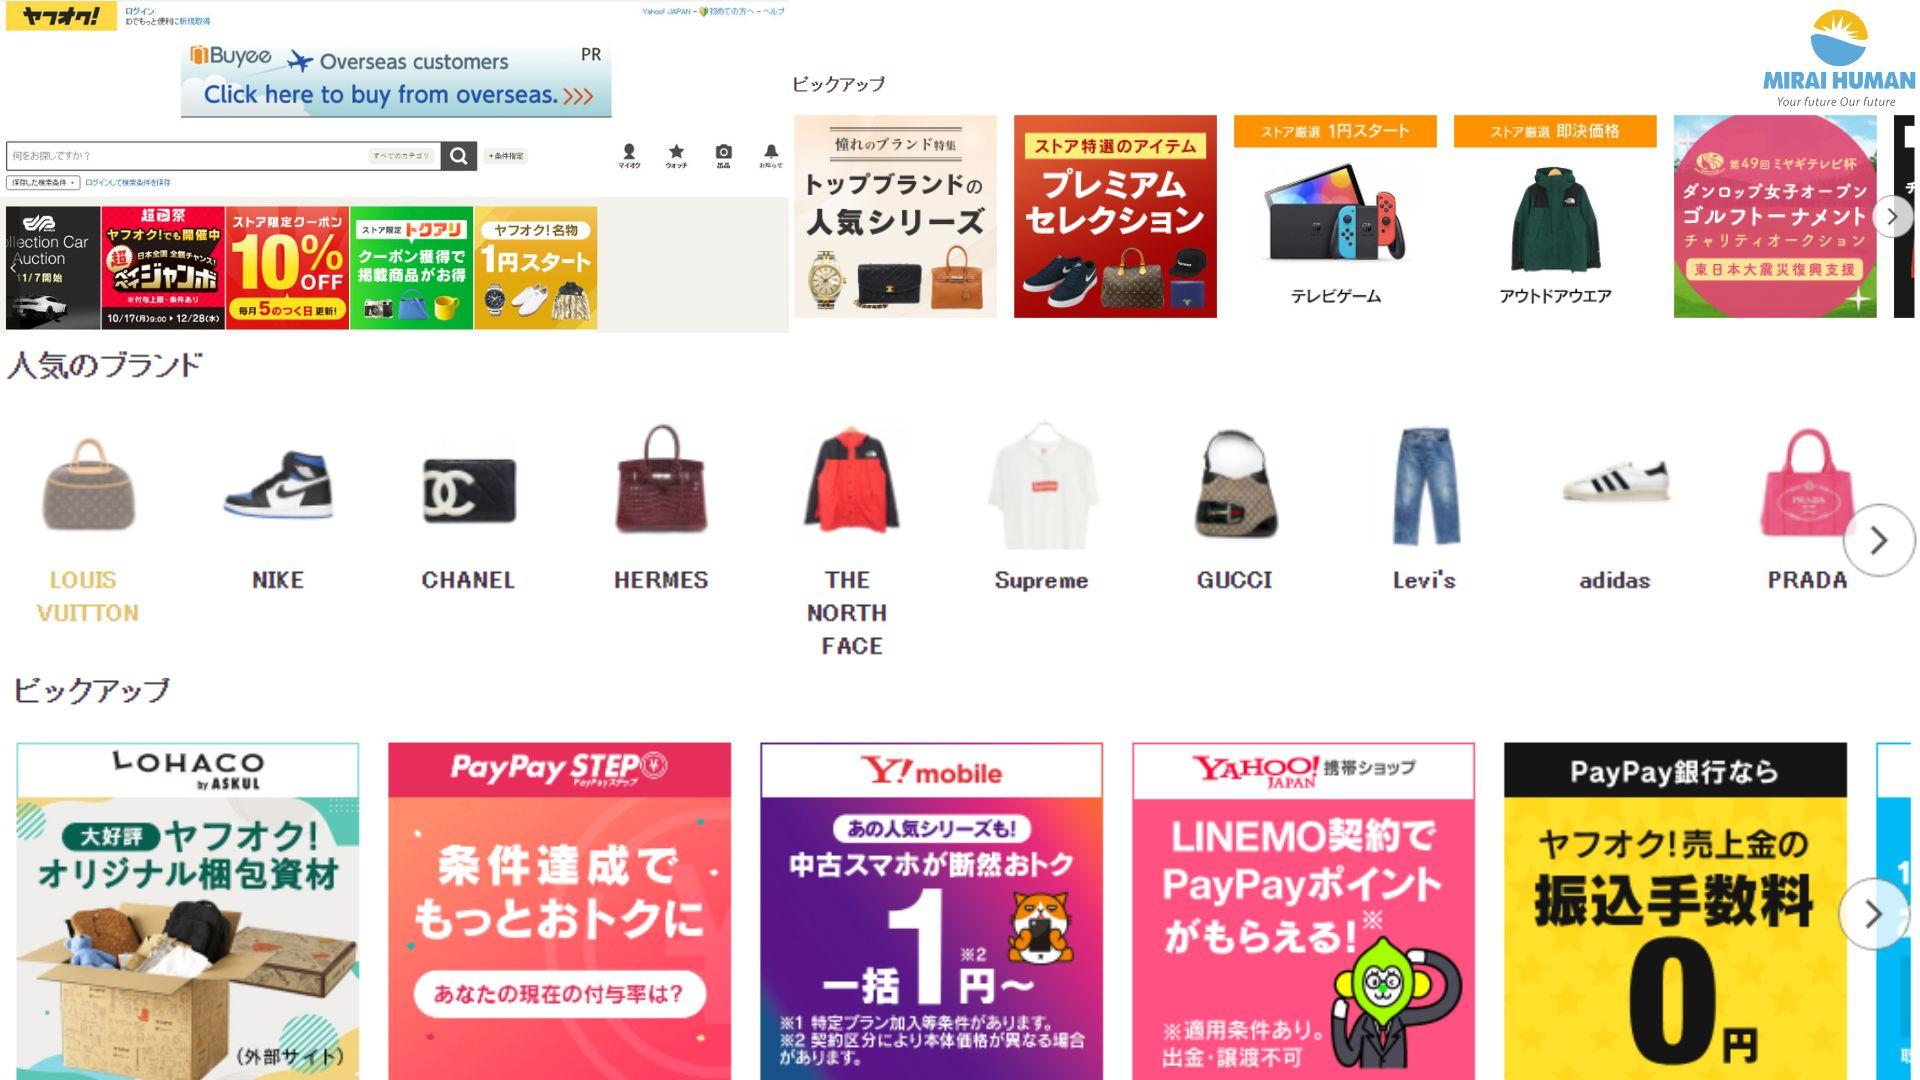 Yahoo Auctions - Trang web bán hàng secondhand tại Nhật